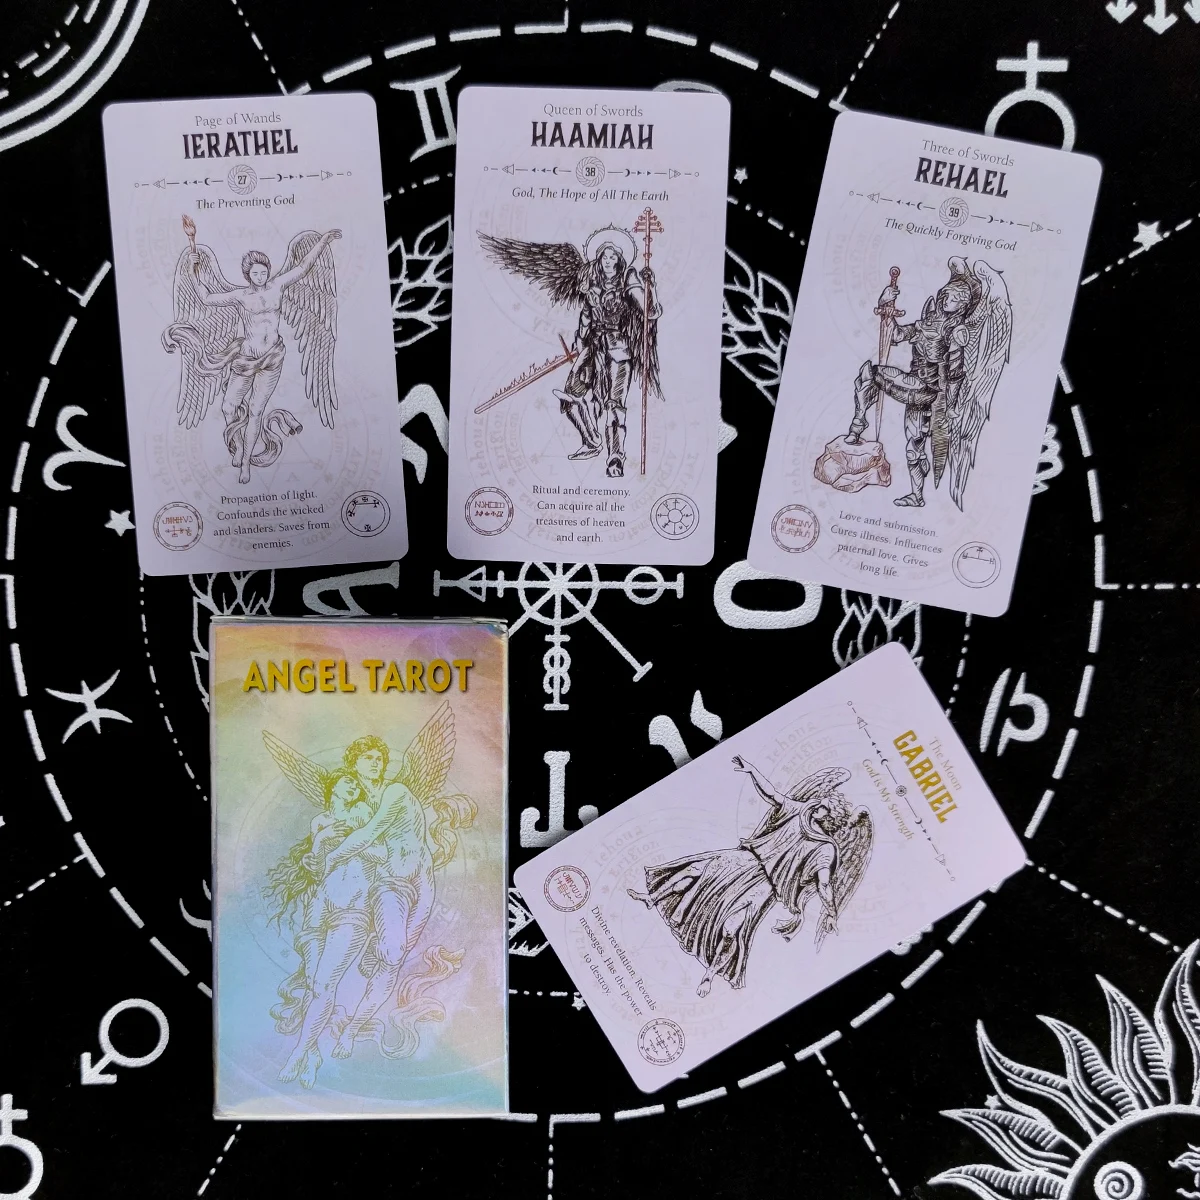 

Новые карты ангела Таро пророчество гадания колода английская версия развлечение настольная игра 78 листов/коробка